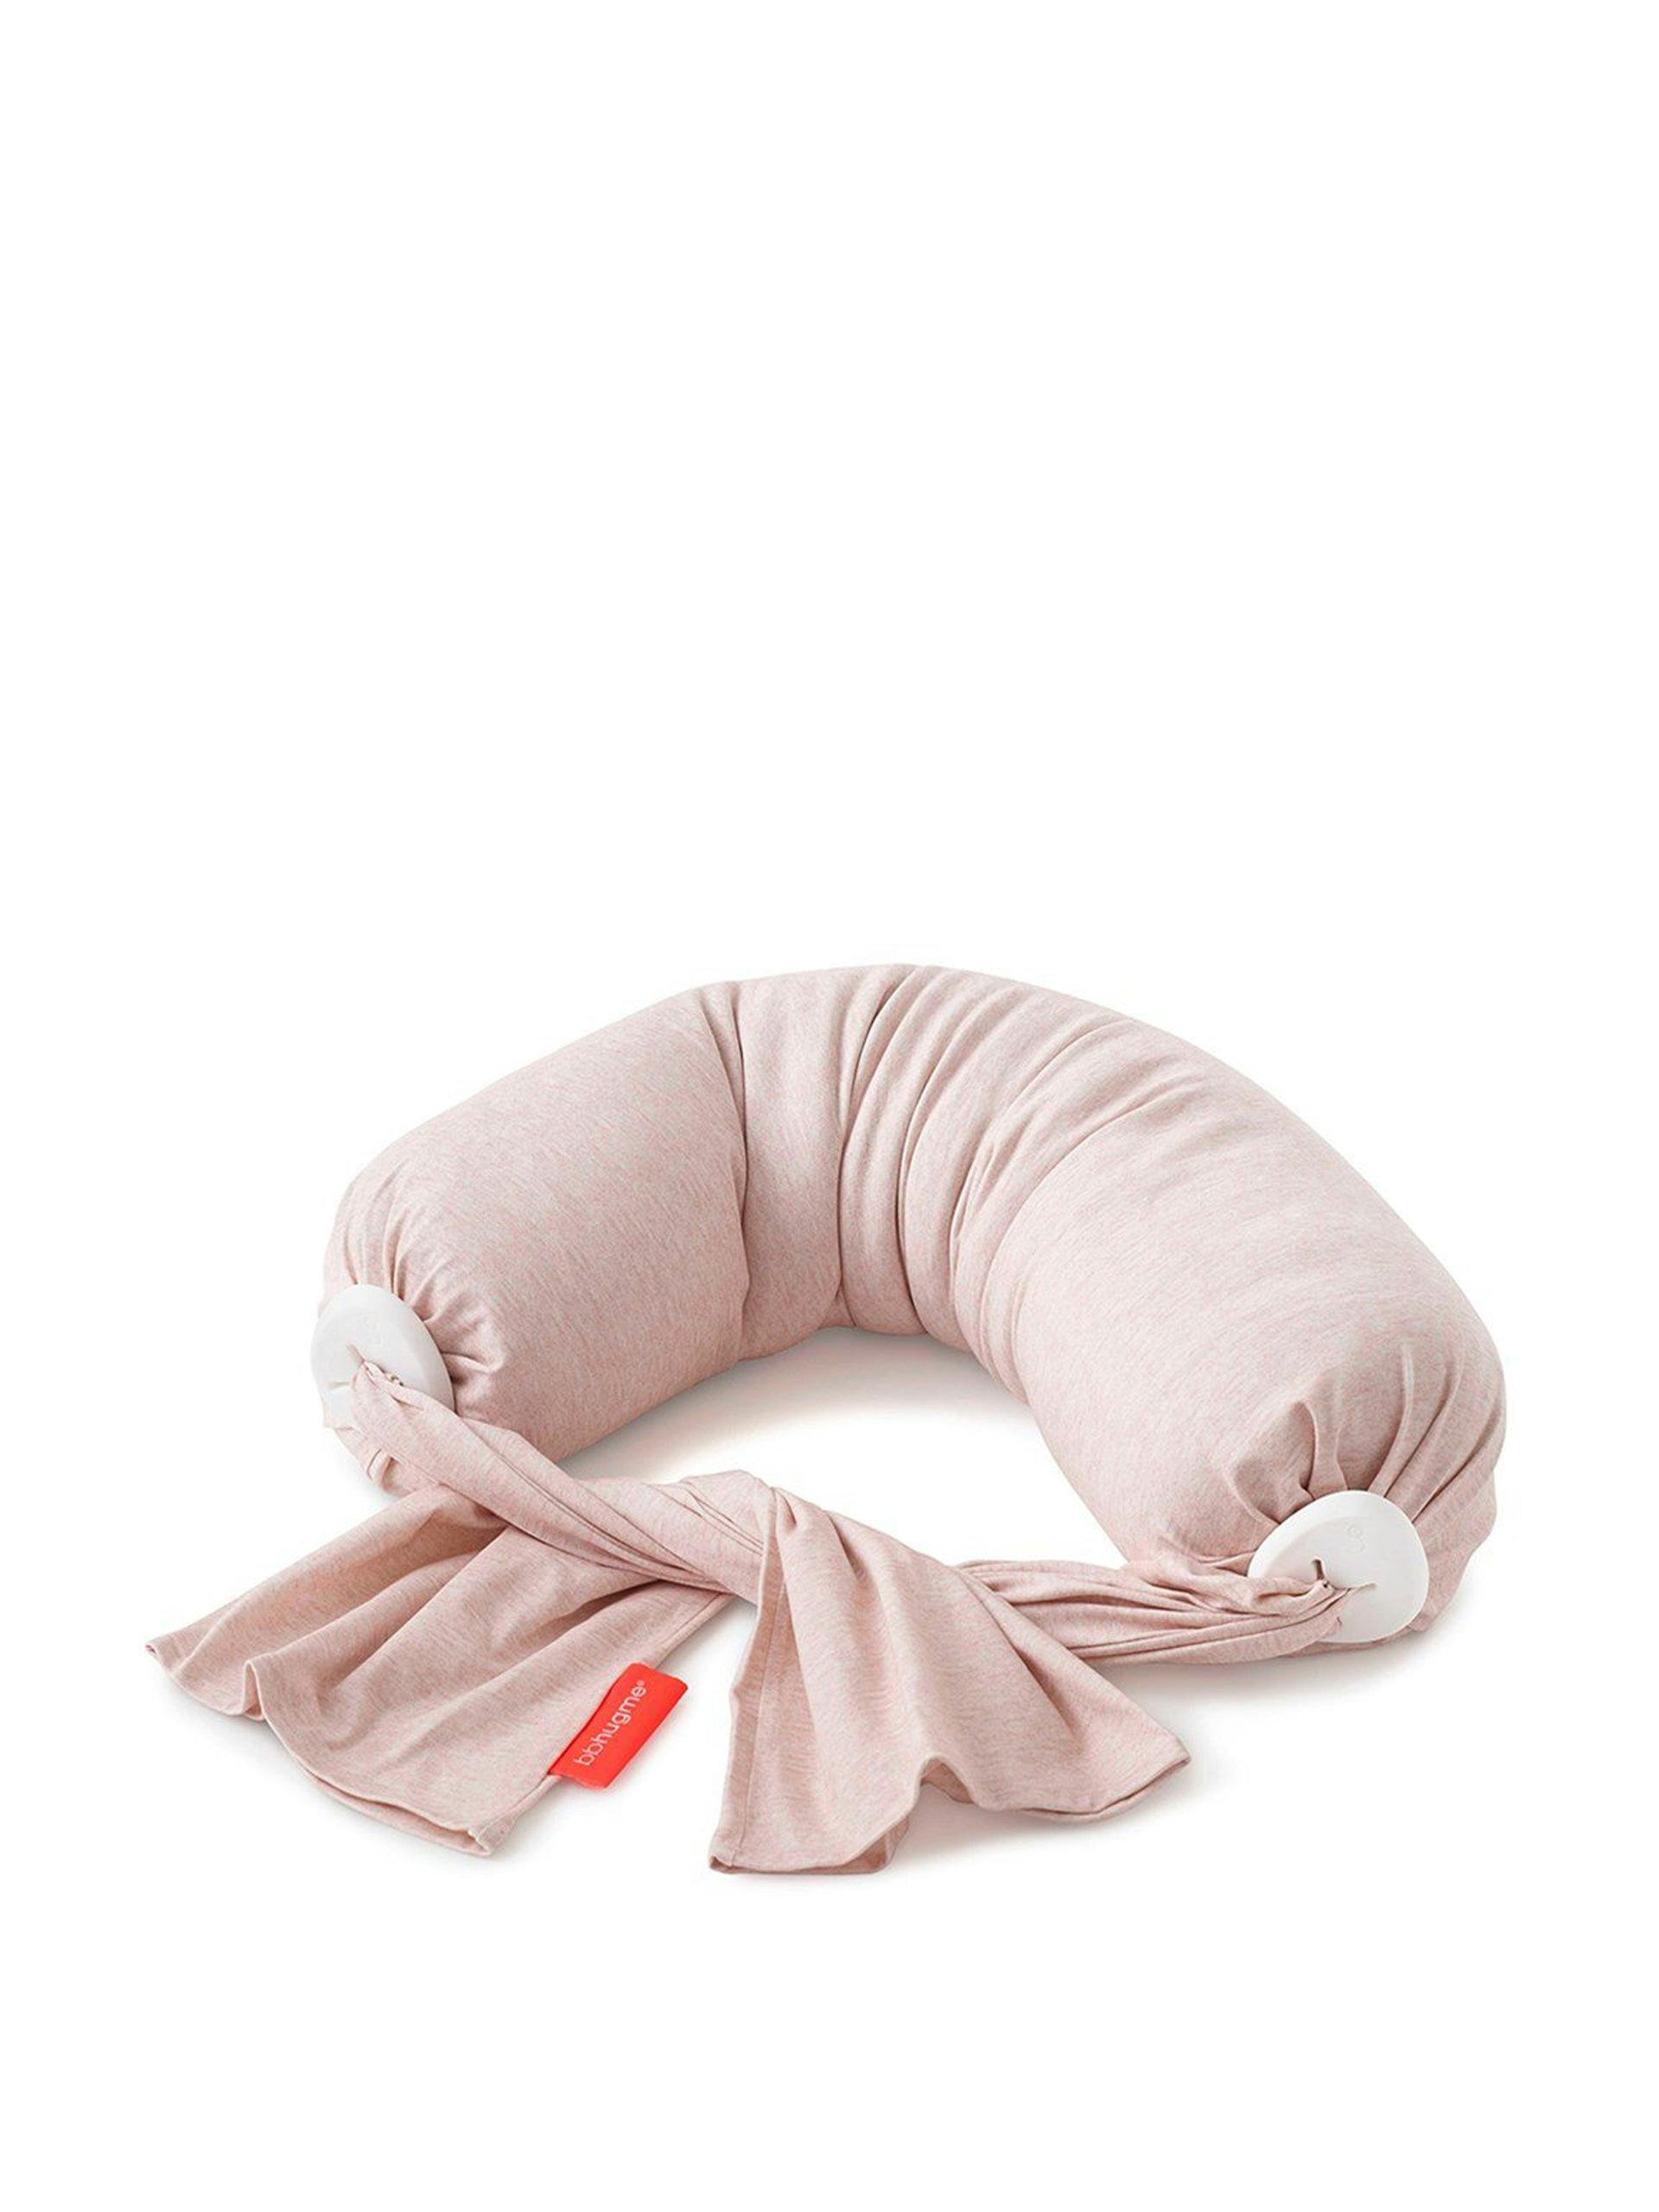 Pink adjustable nursing pillow